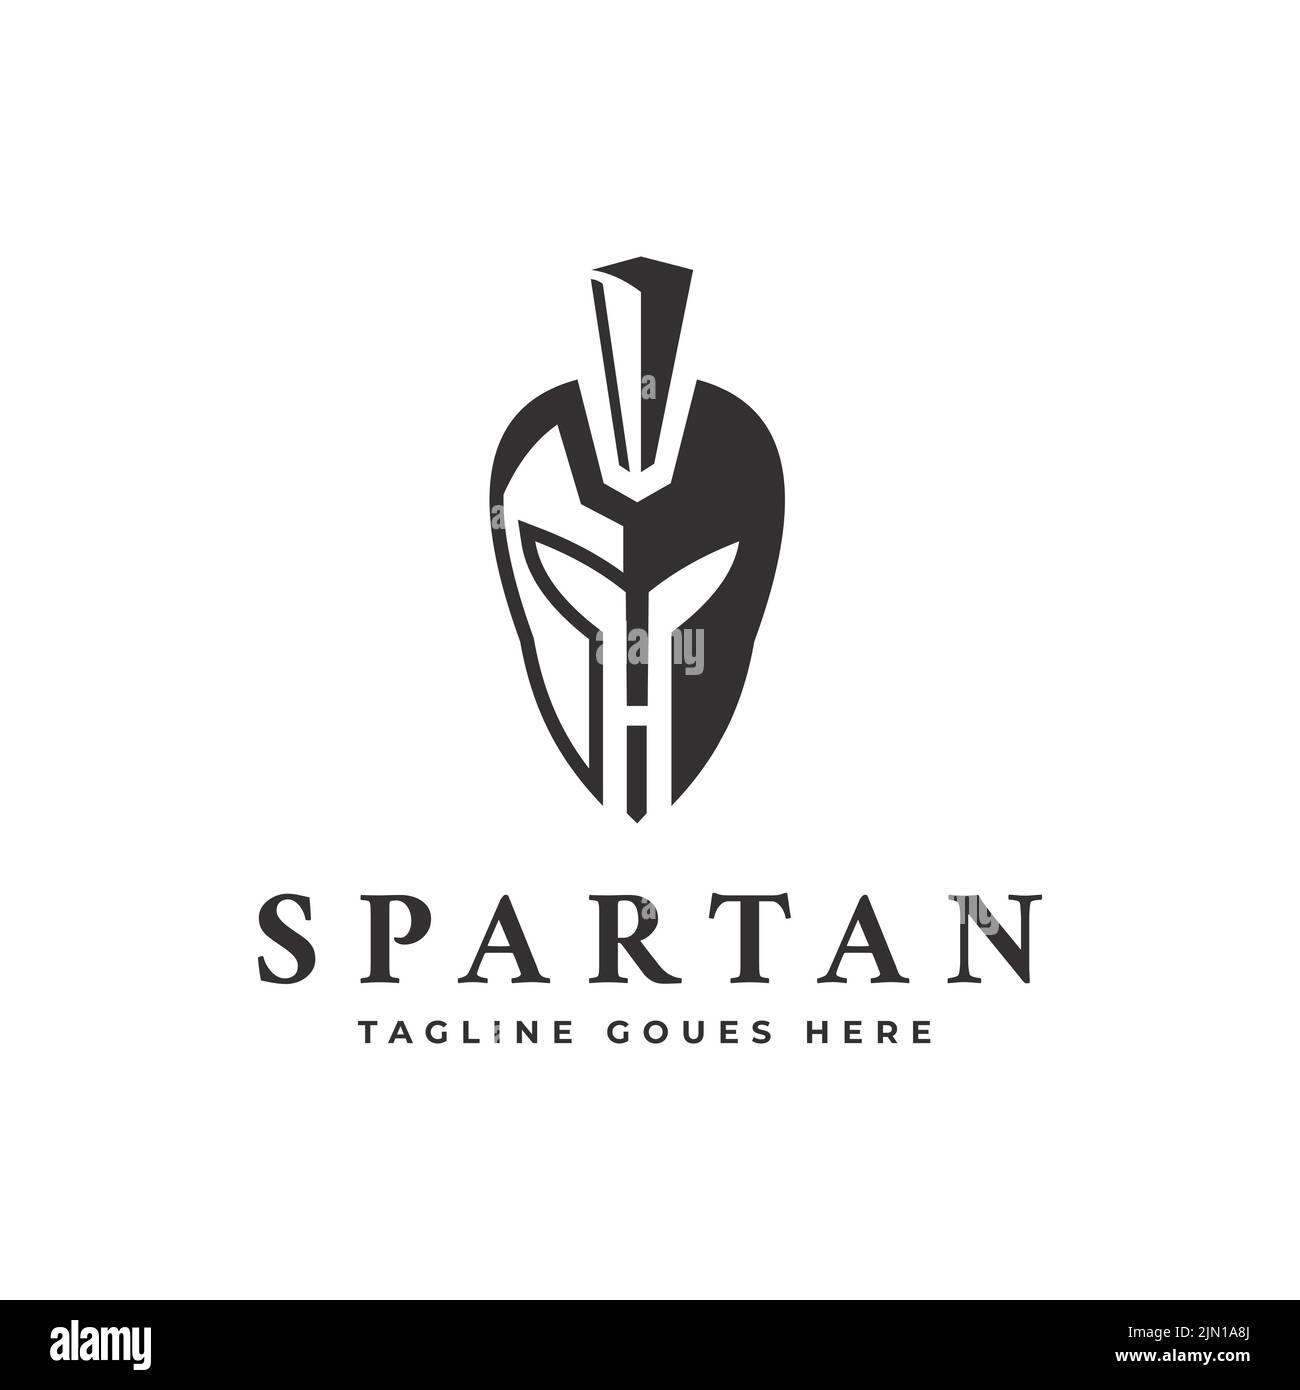 Semplice e creativo logo spartano design con logo vettoriale a forma di lettera H. Symbol, modello. Illustrazione Vettoriale